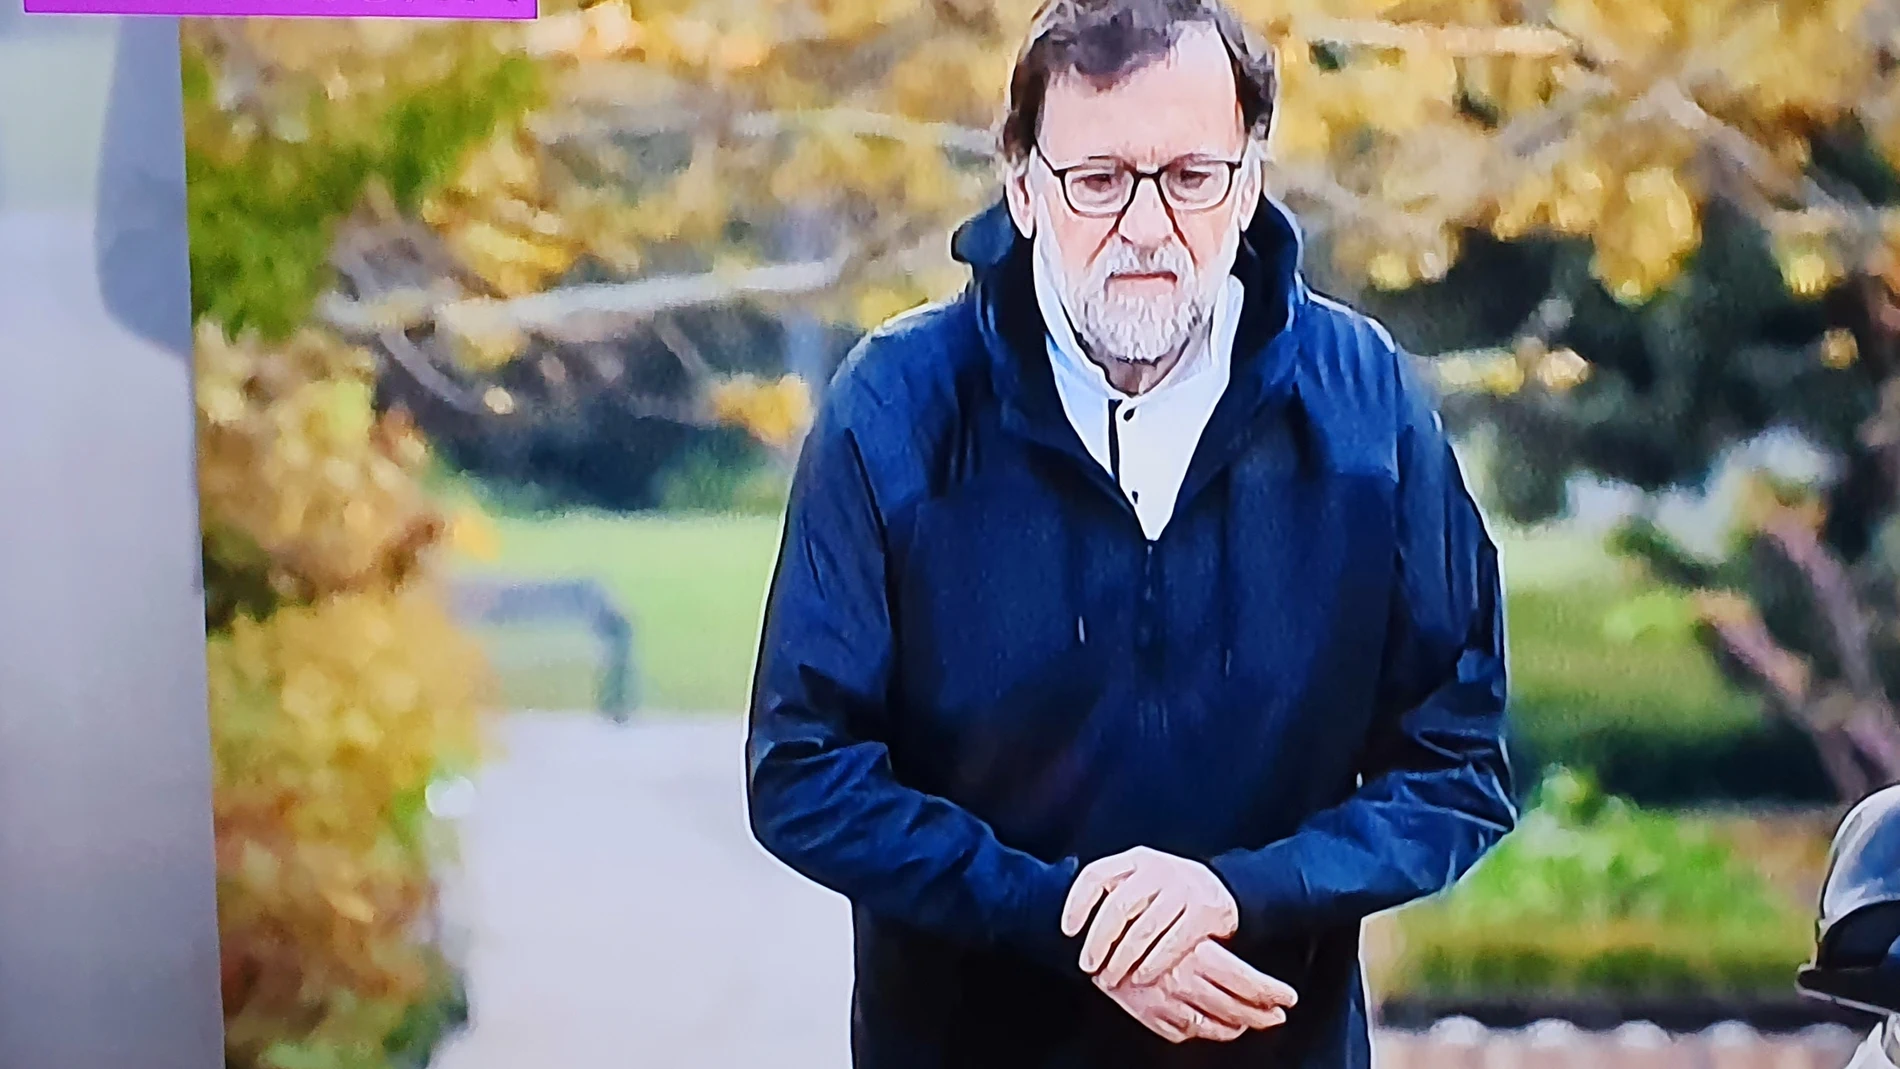 Exclusiva de La Sexta que muestra a Mariano Rajoy en la calle haciendo deporte, saltándose el confinamiento.